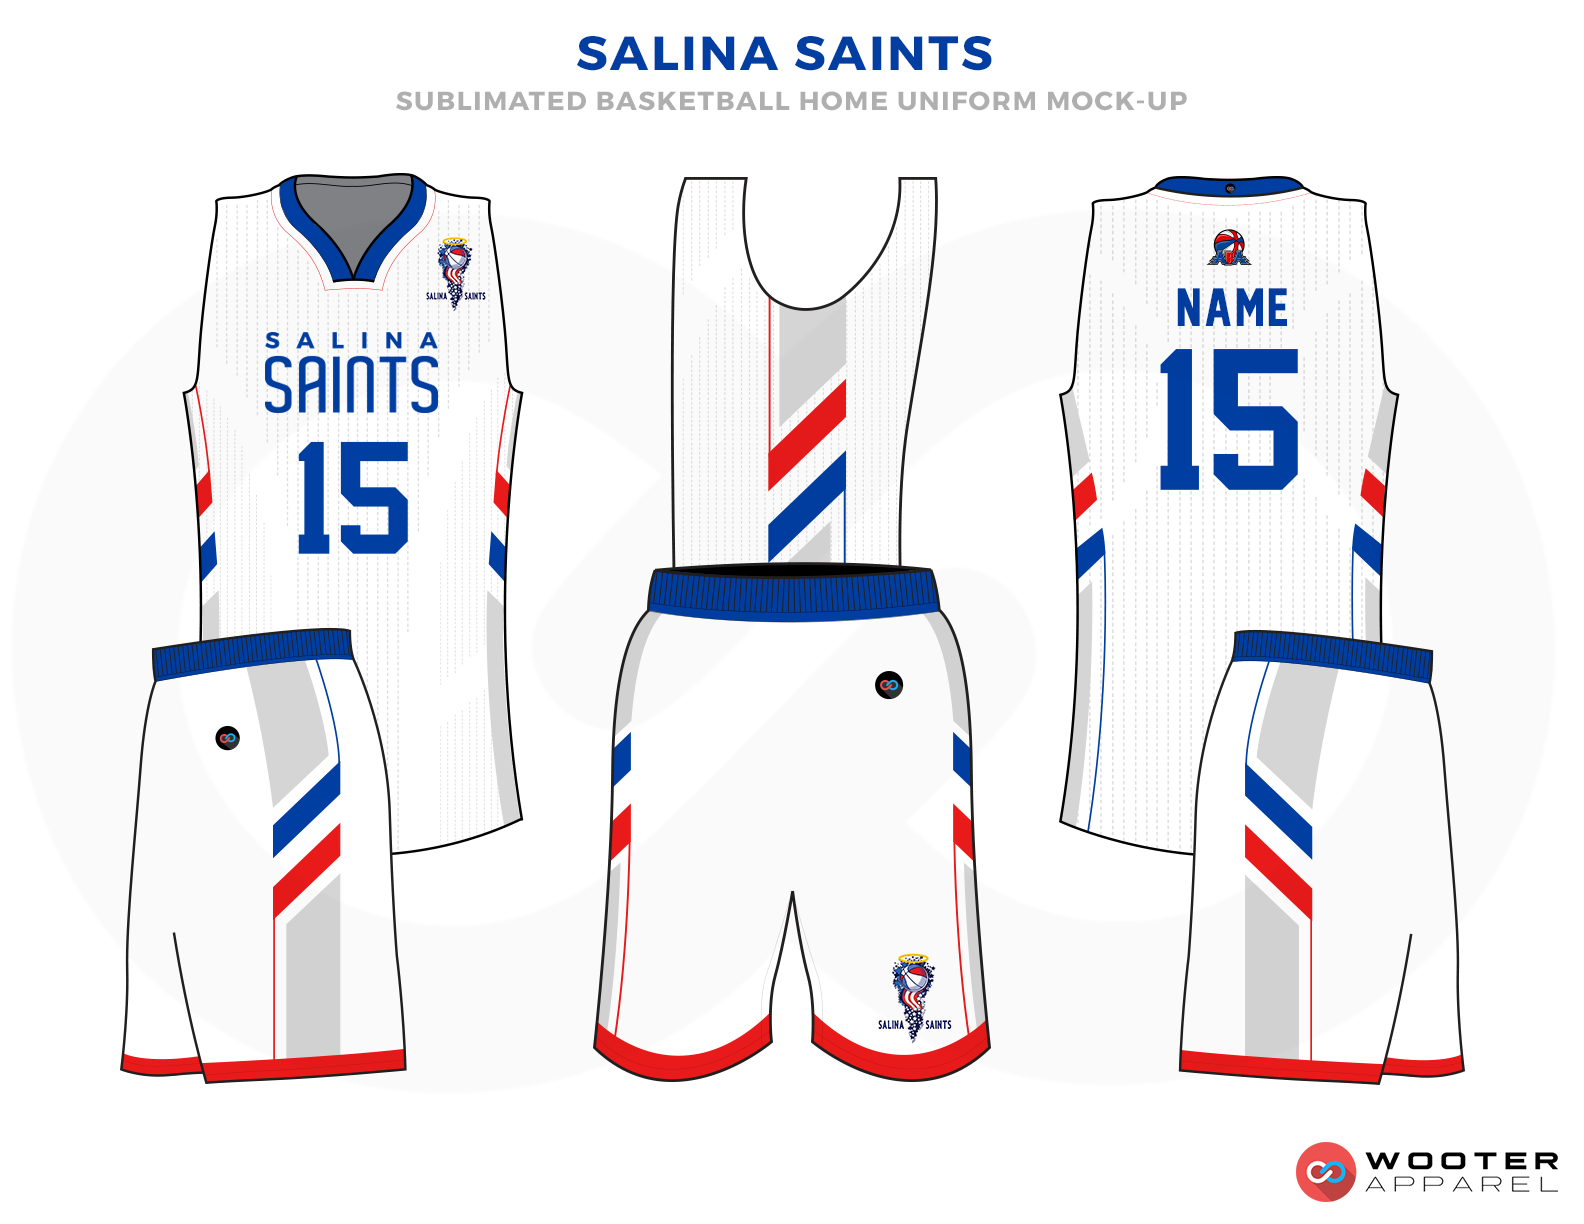 SalinaSaints-BasketballUniform-Home-Mockup.png